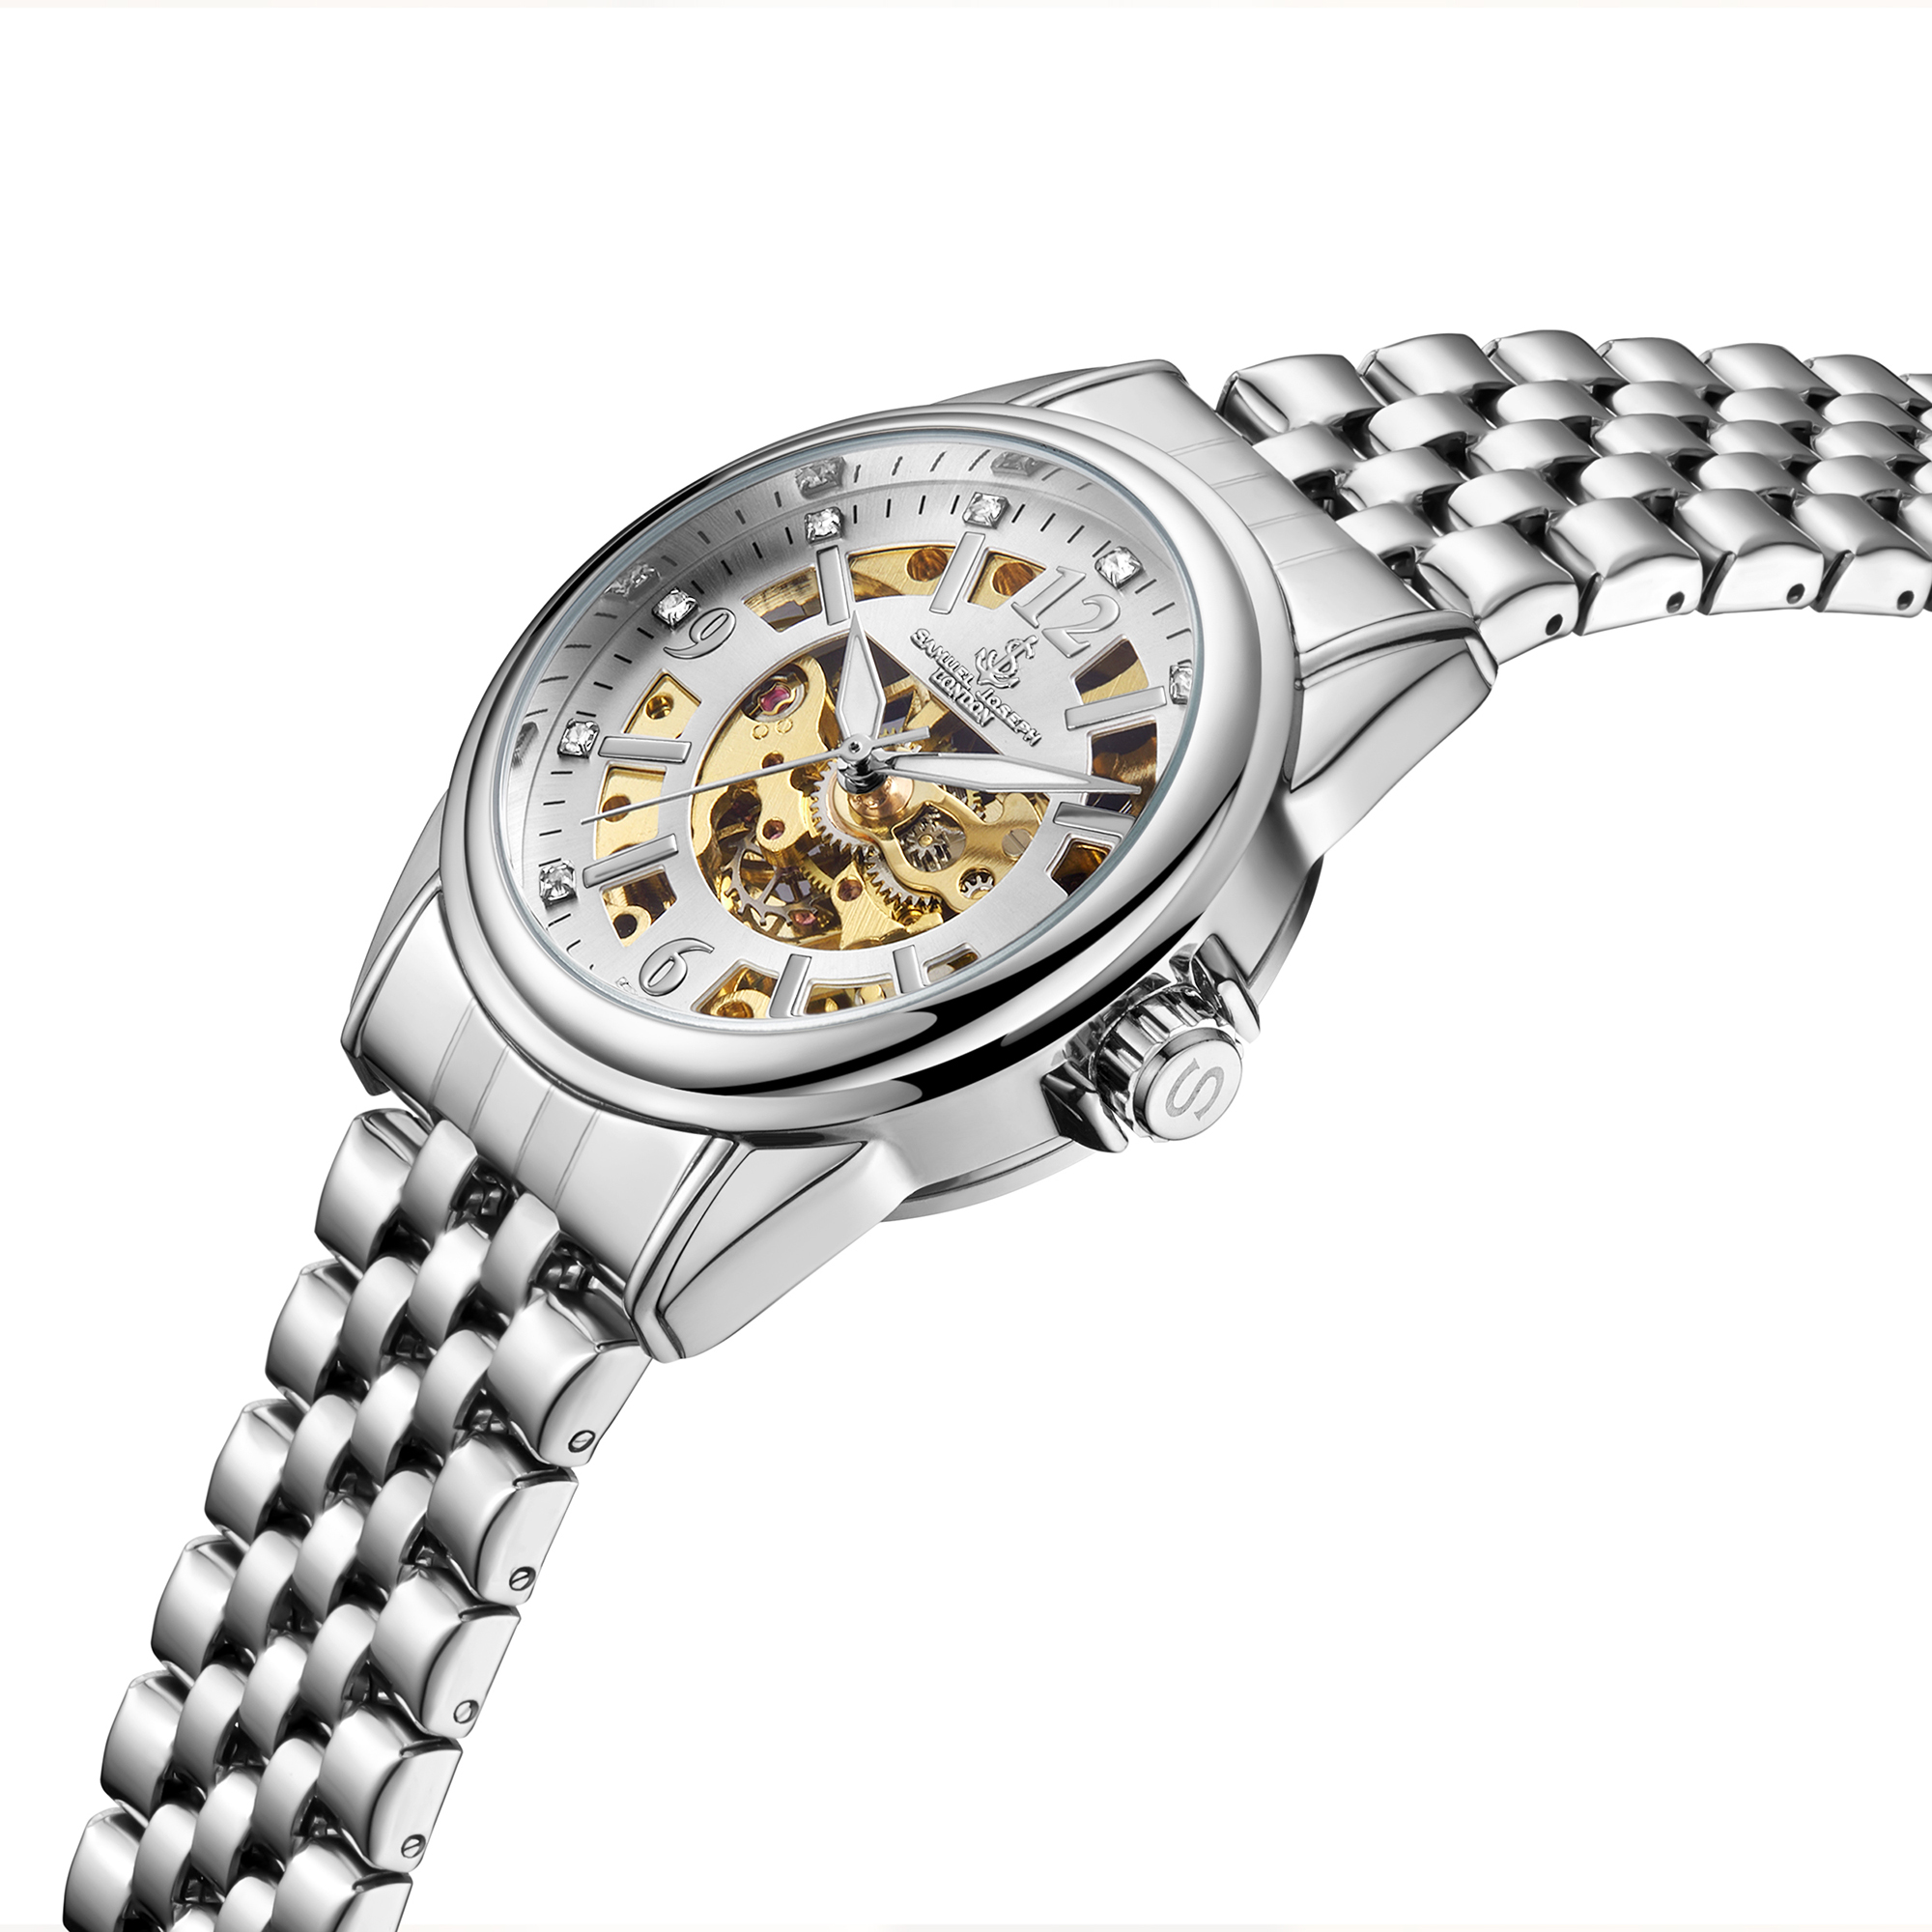 Samuel Joseph Limited Edition Skeleton Jubilee Steel Watch - Free Delivery & 2 Year Warranty - Image 2 of 5